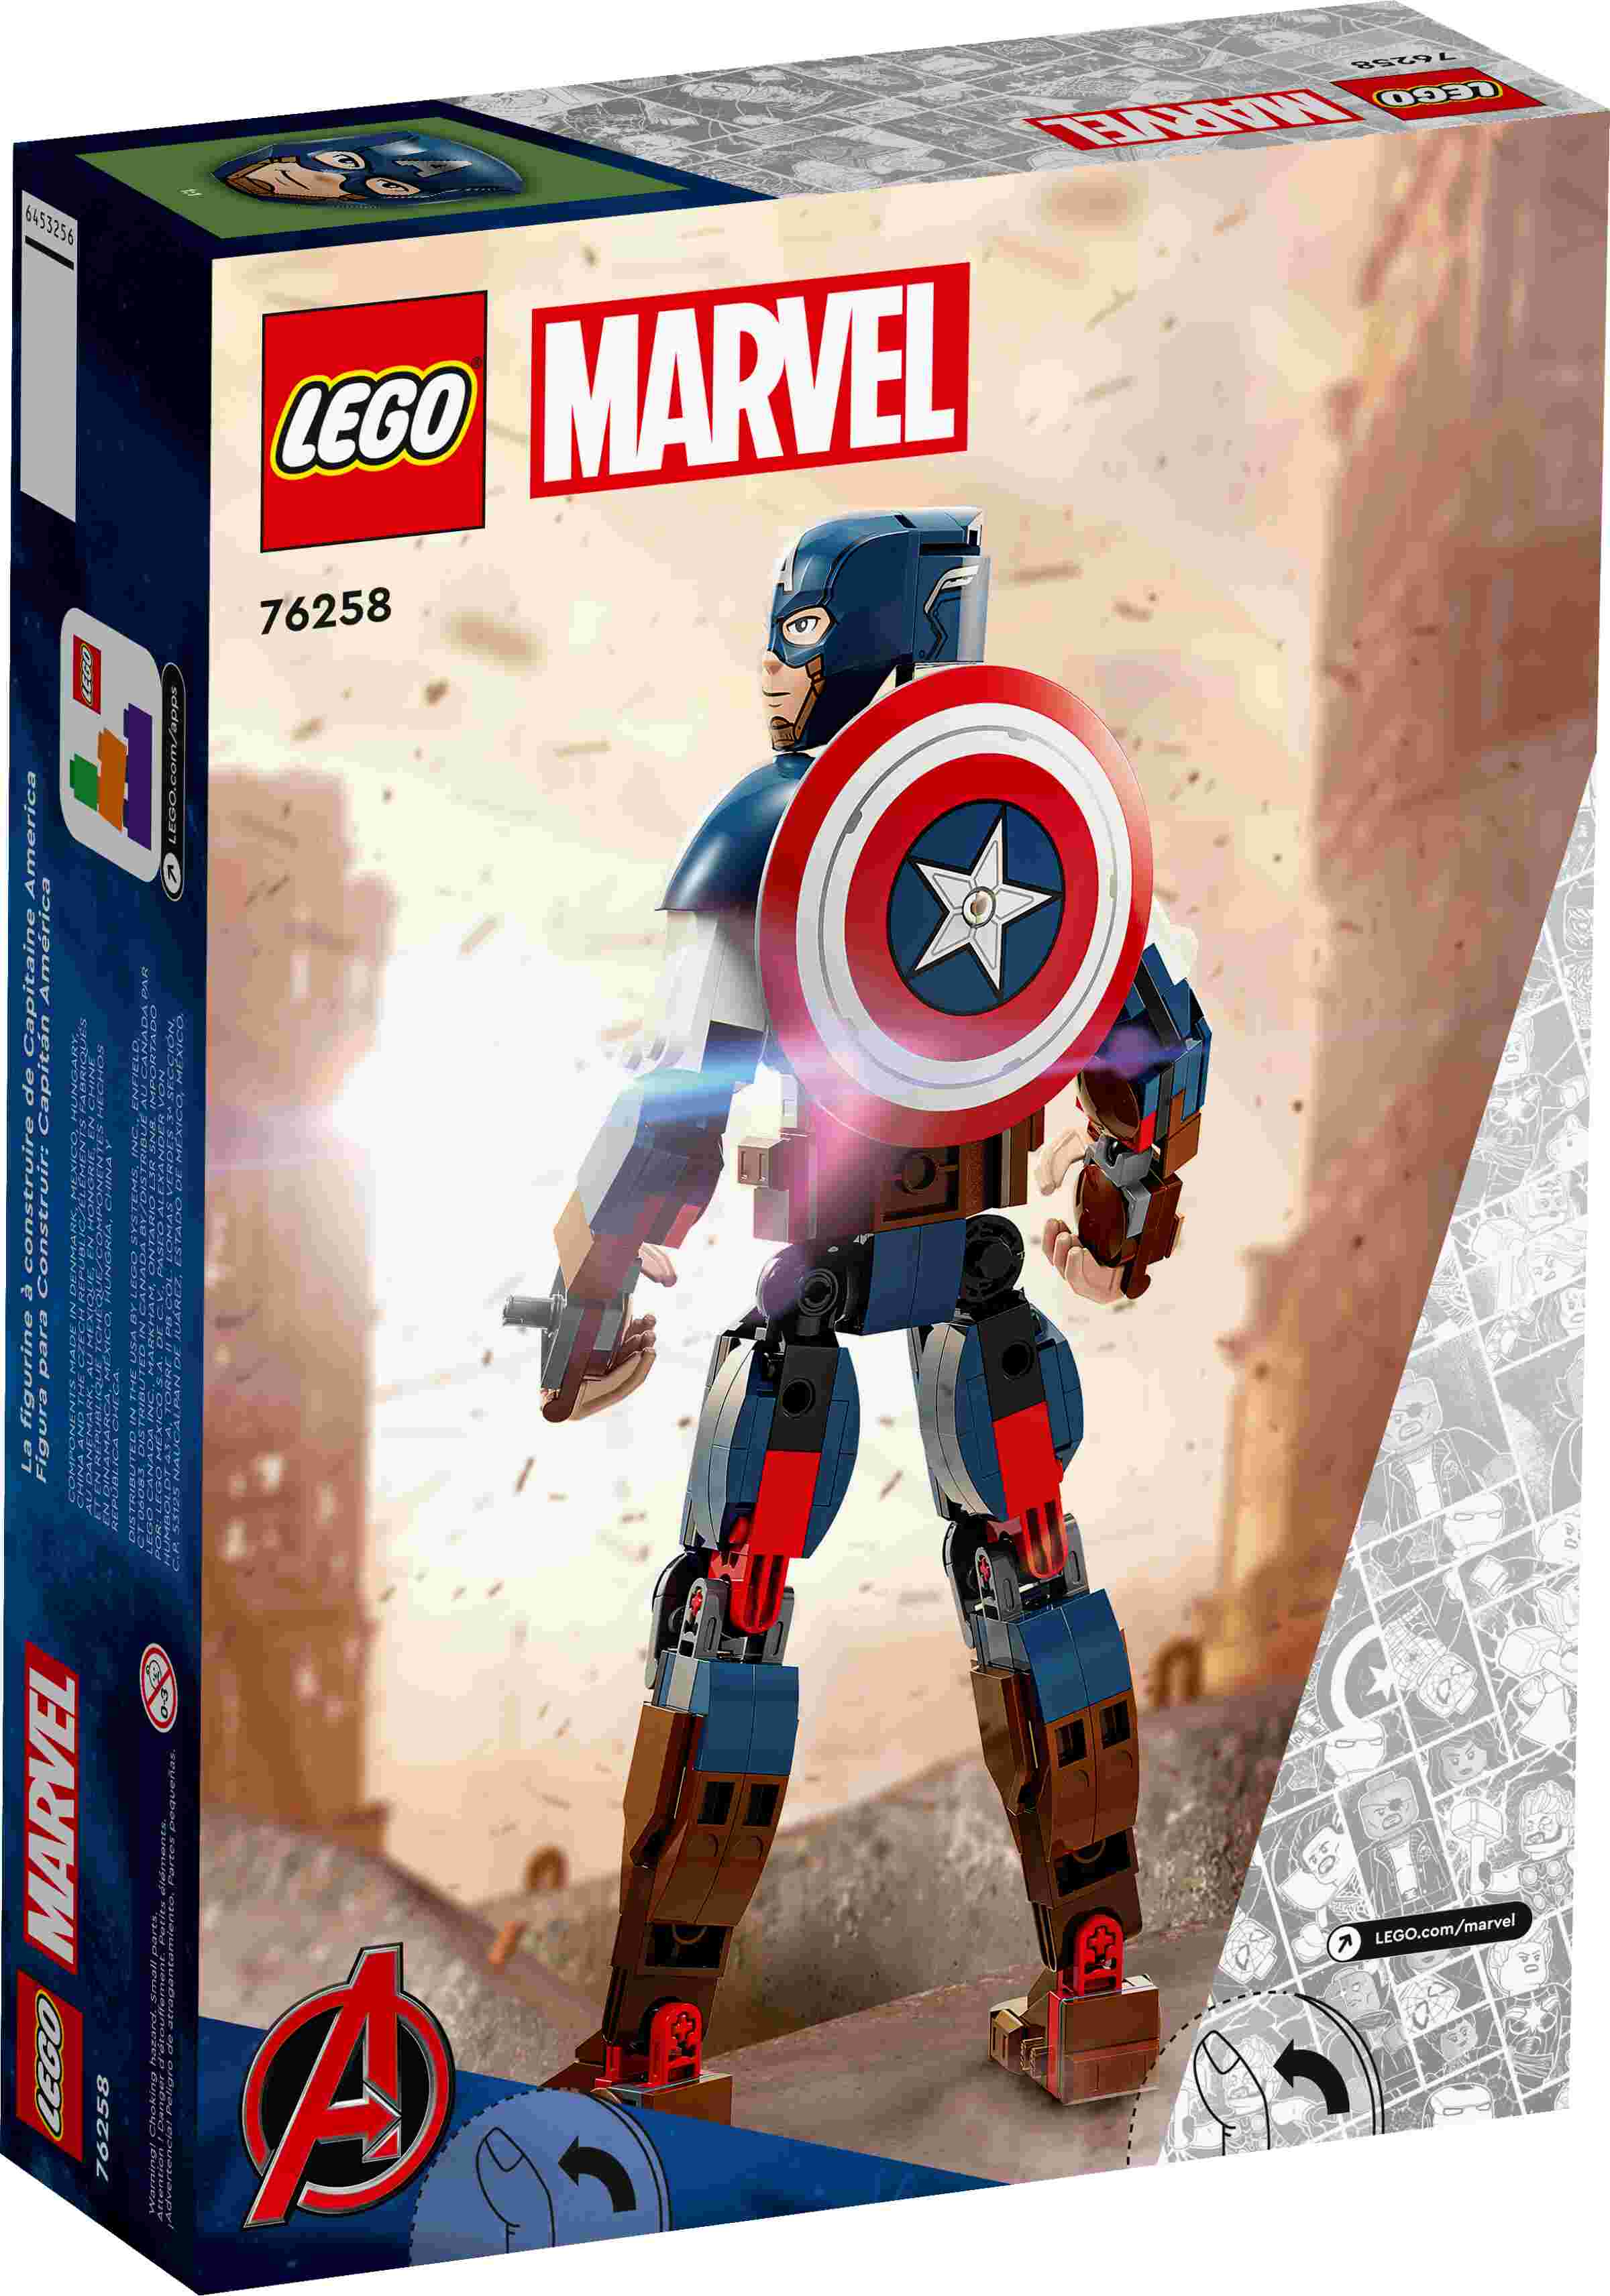 LEGO 76258 Marvel Captain America Baufigur, Superheld mit Schild